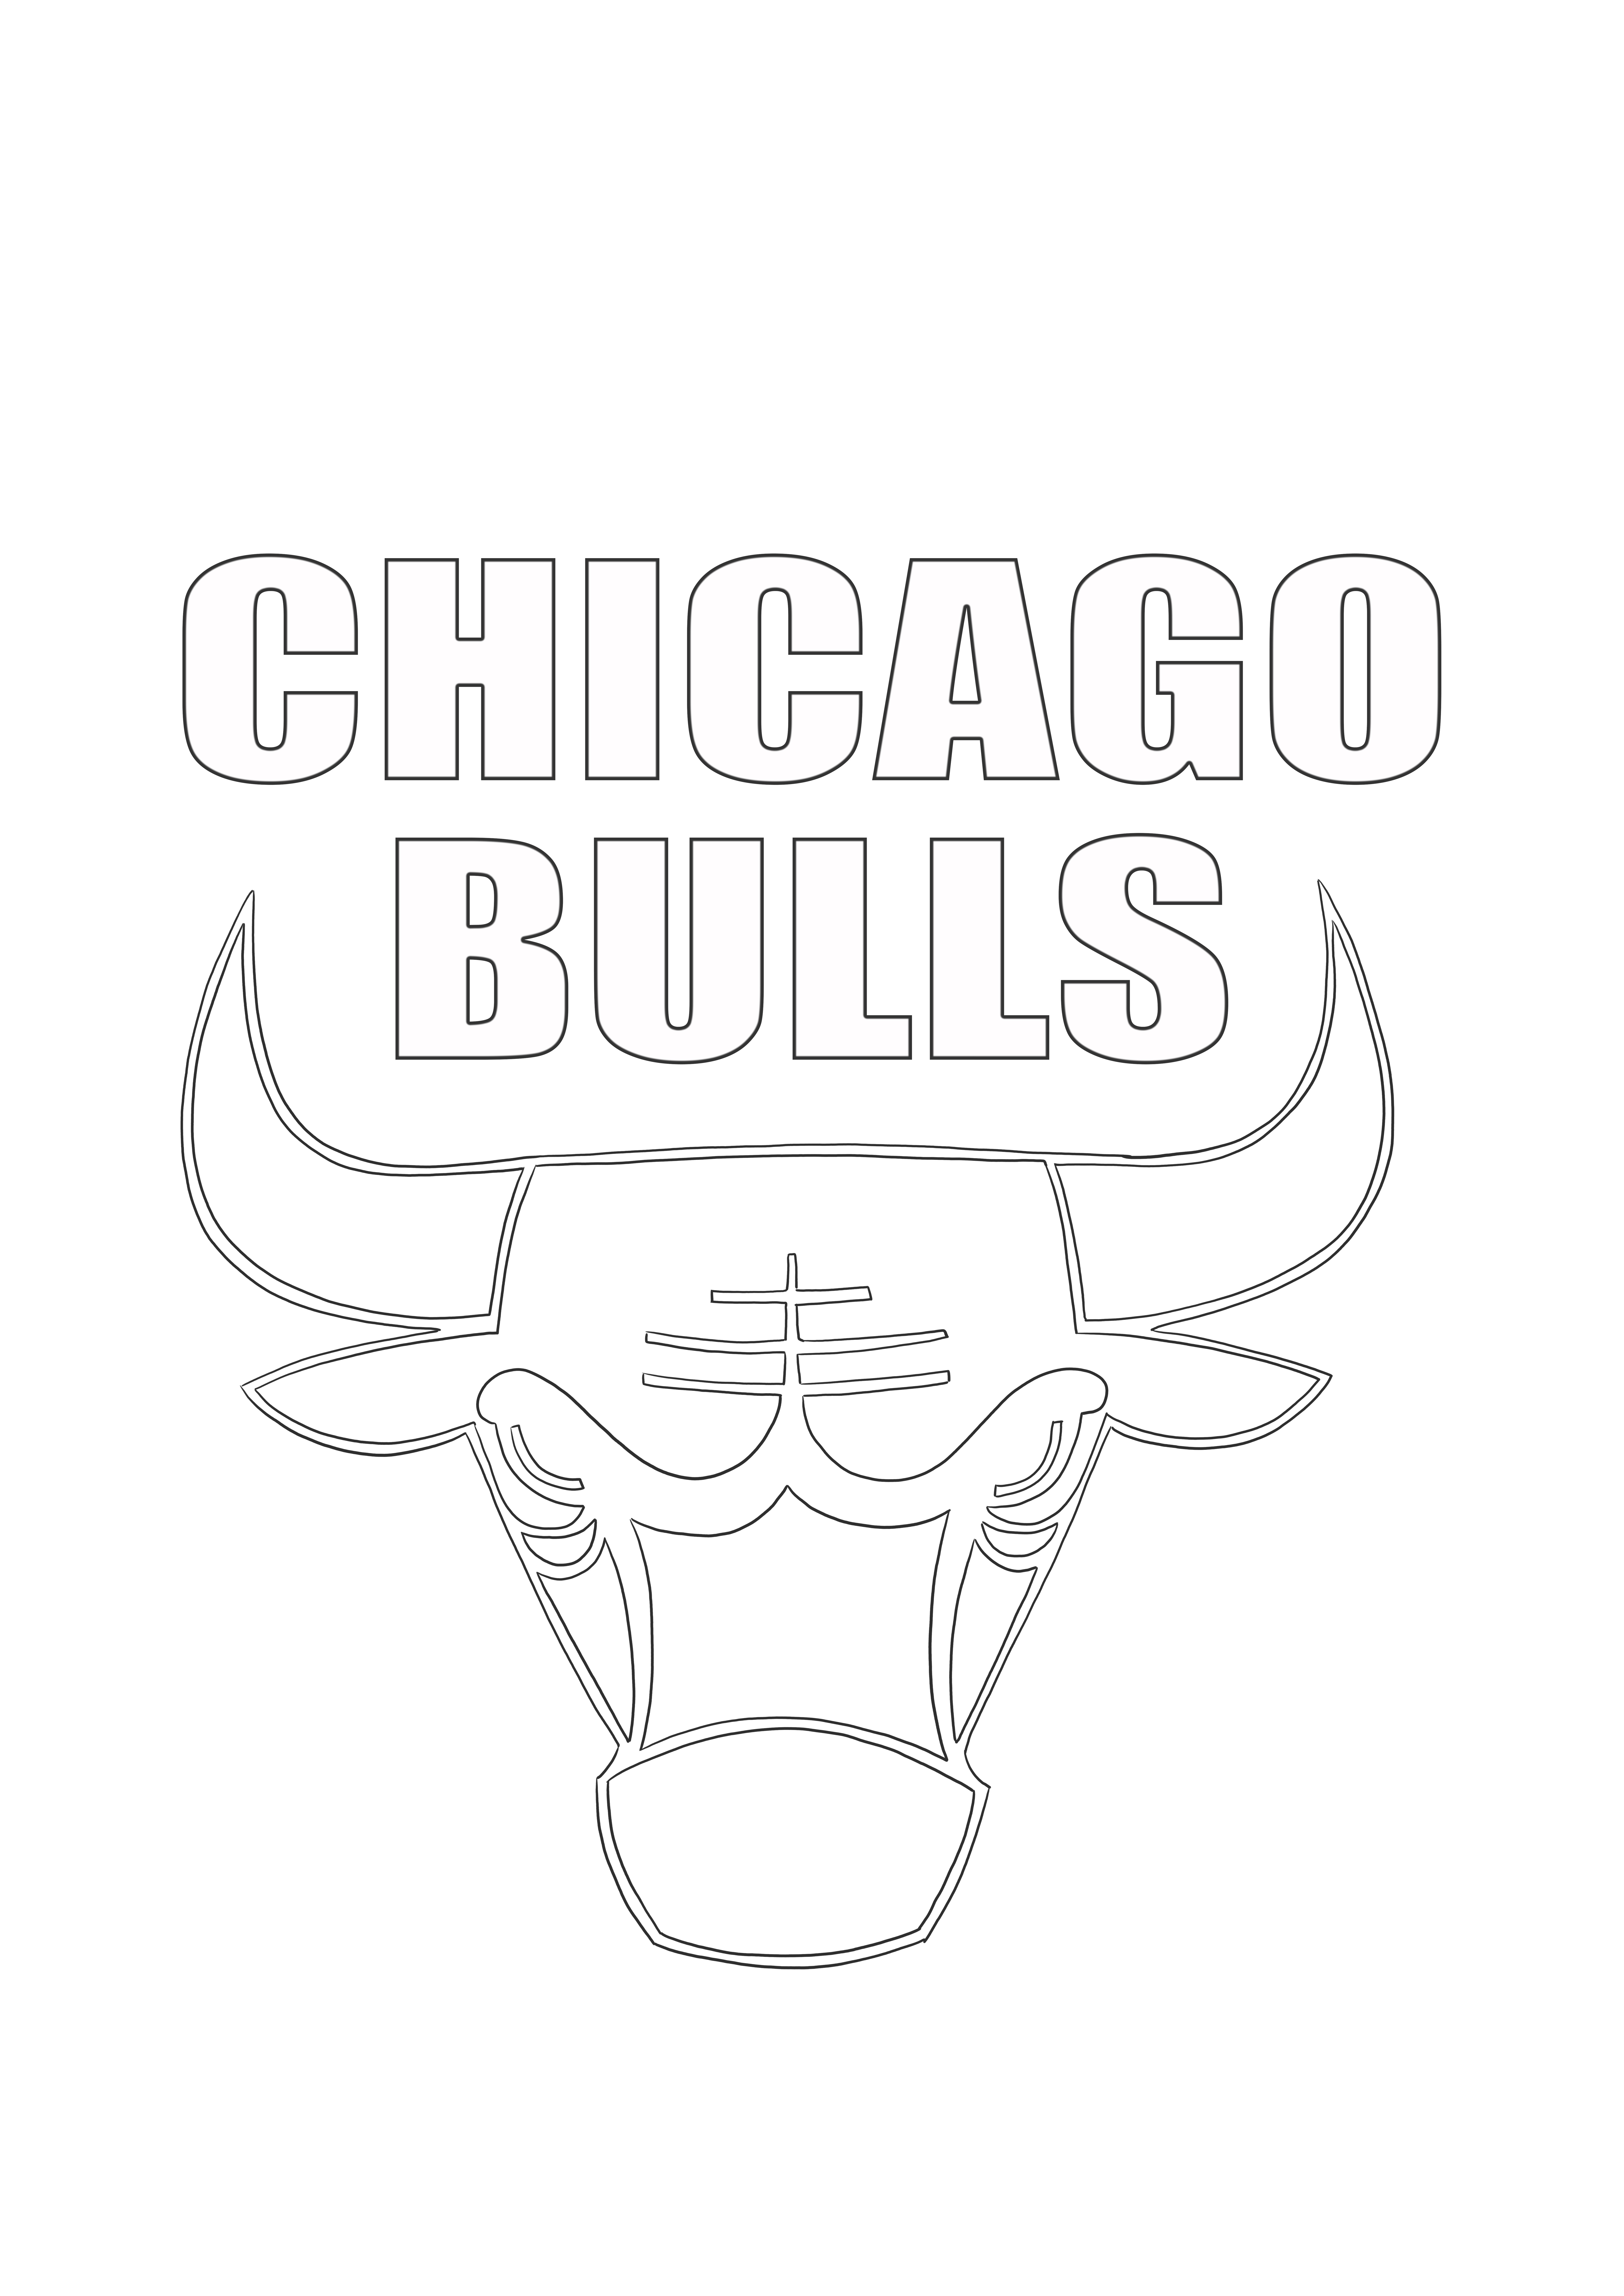 Chicago Bulls logosu boyama resmi ücretsiz yazdırabilir ve renklendirebilir